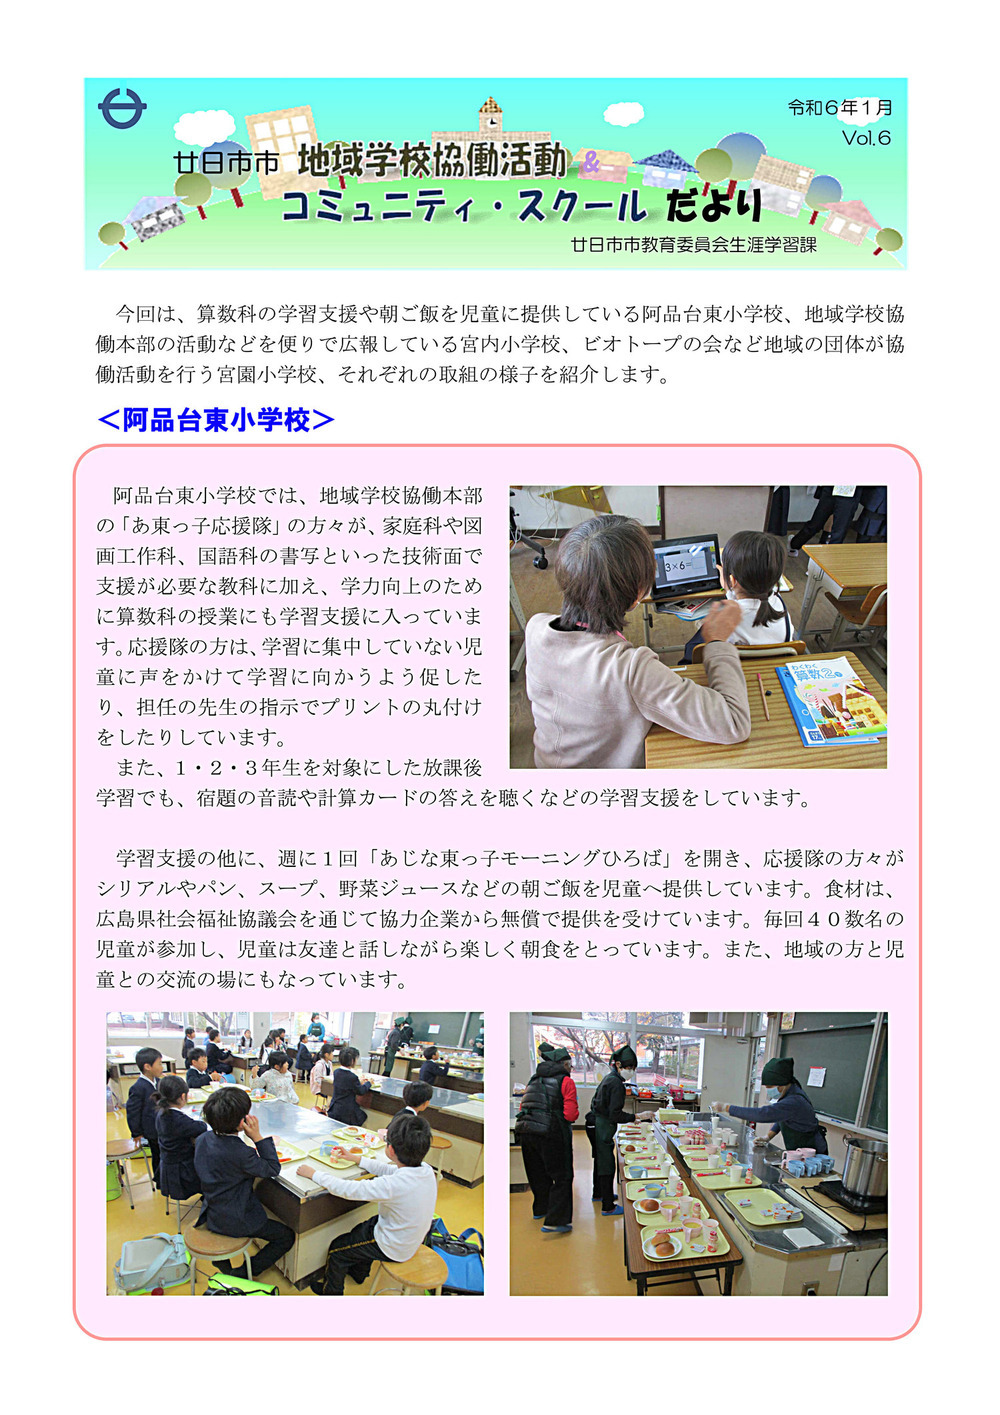 Escola local da cidade de Hatsukaichi Atividades colaborativas Escola comunitária Vol.6 Janeiro de XNUMX (Escola primária Ajindai Higashi)